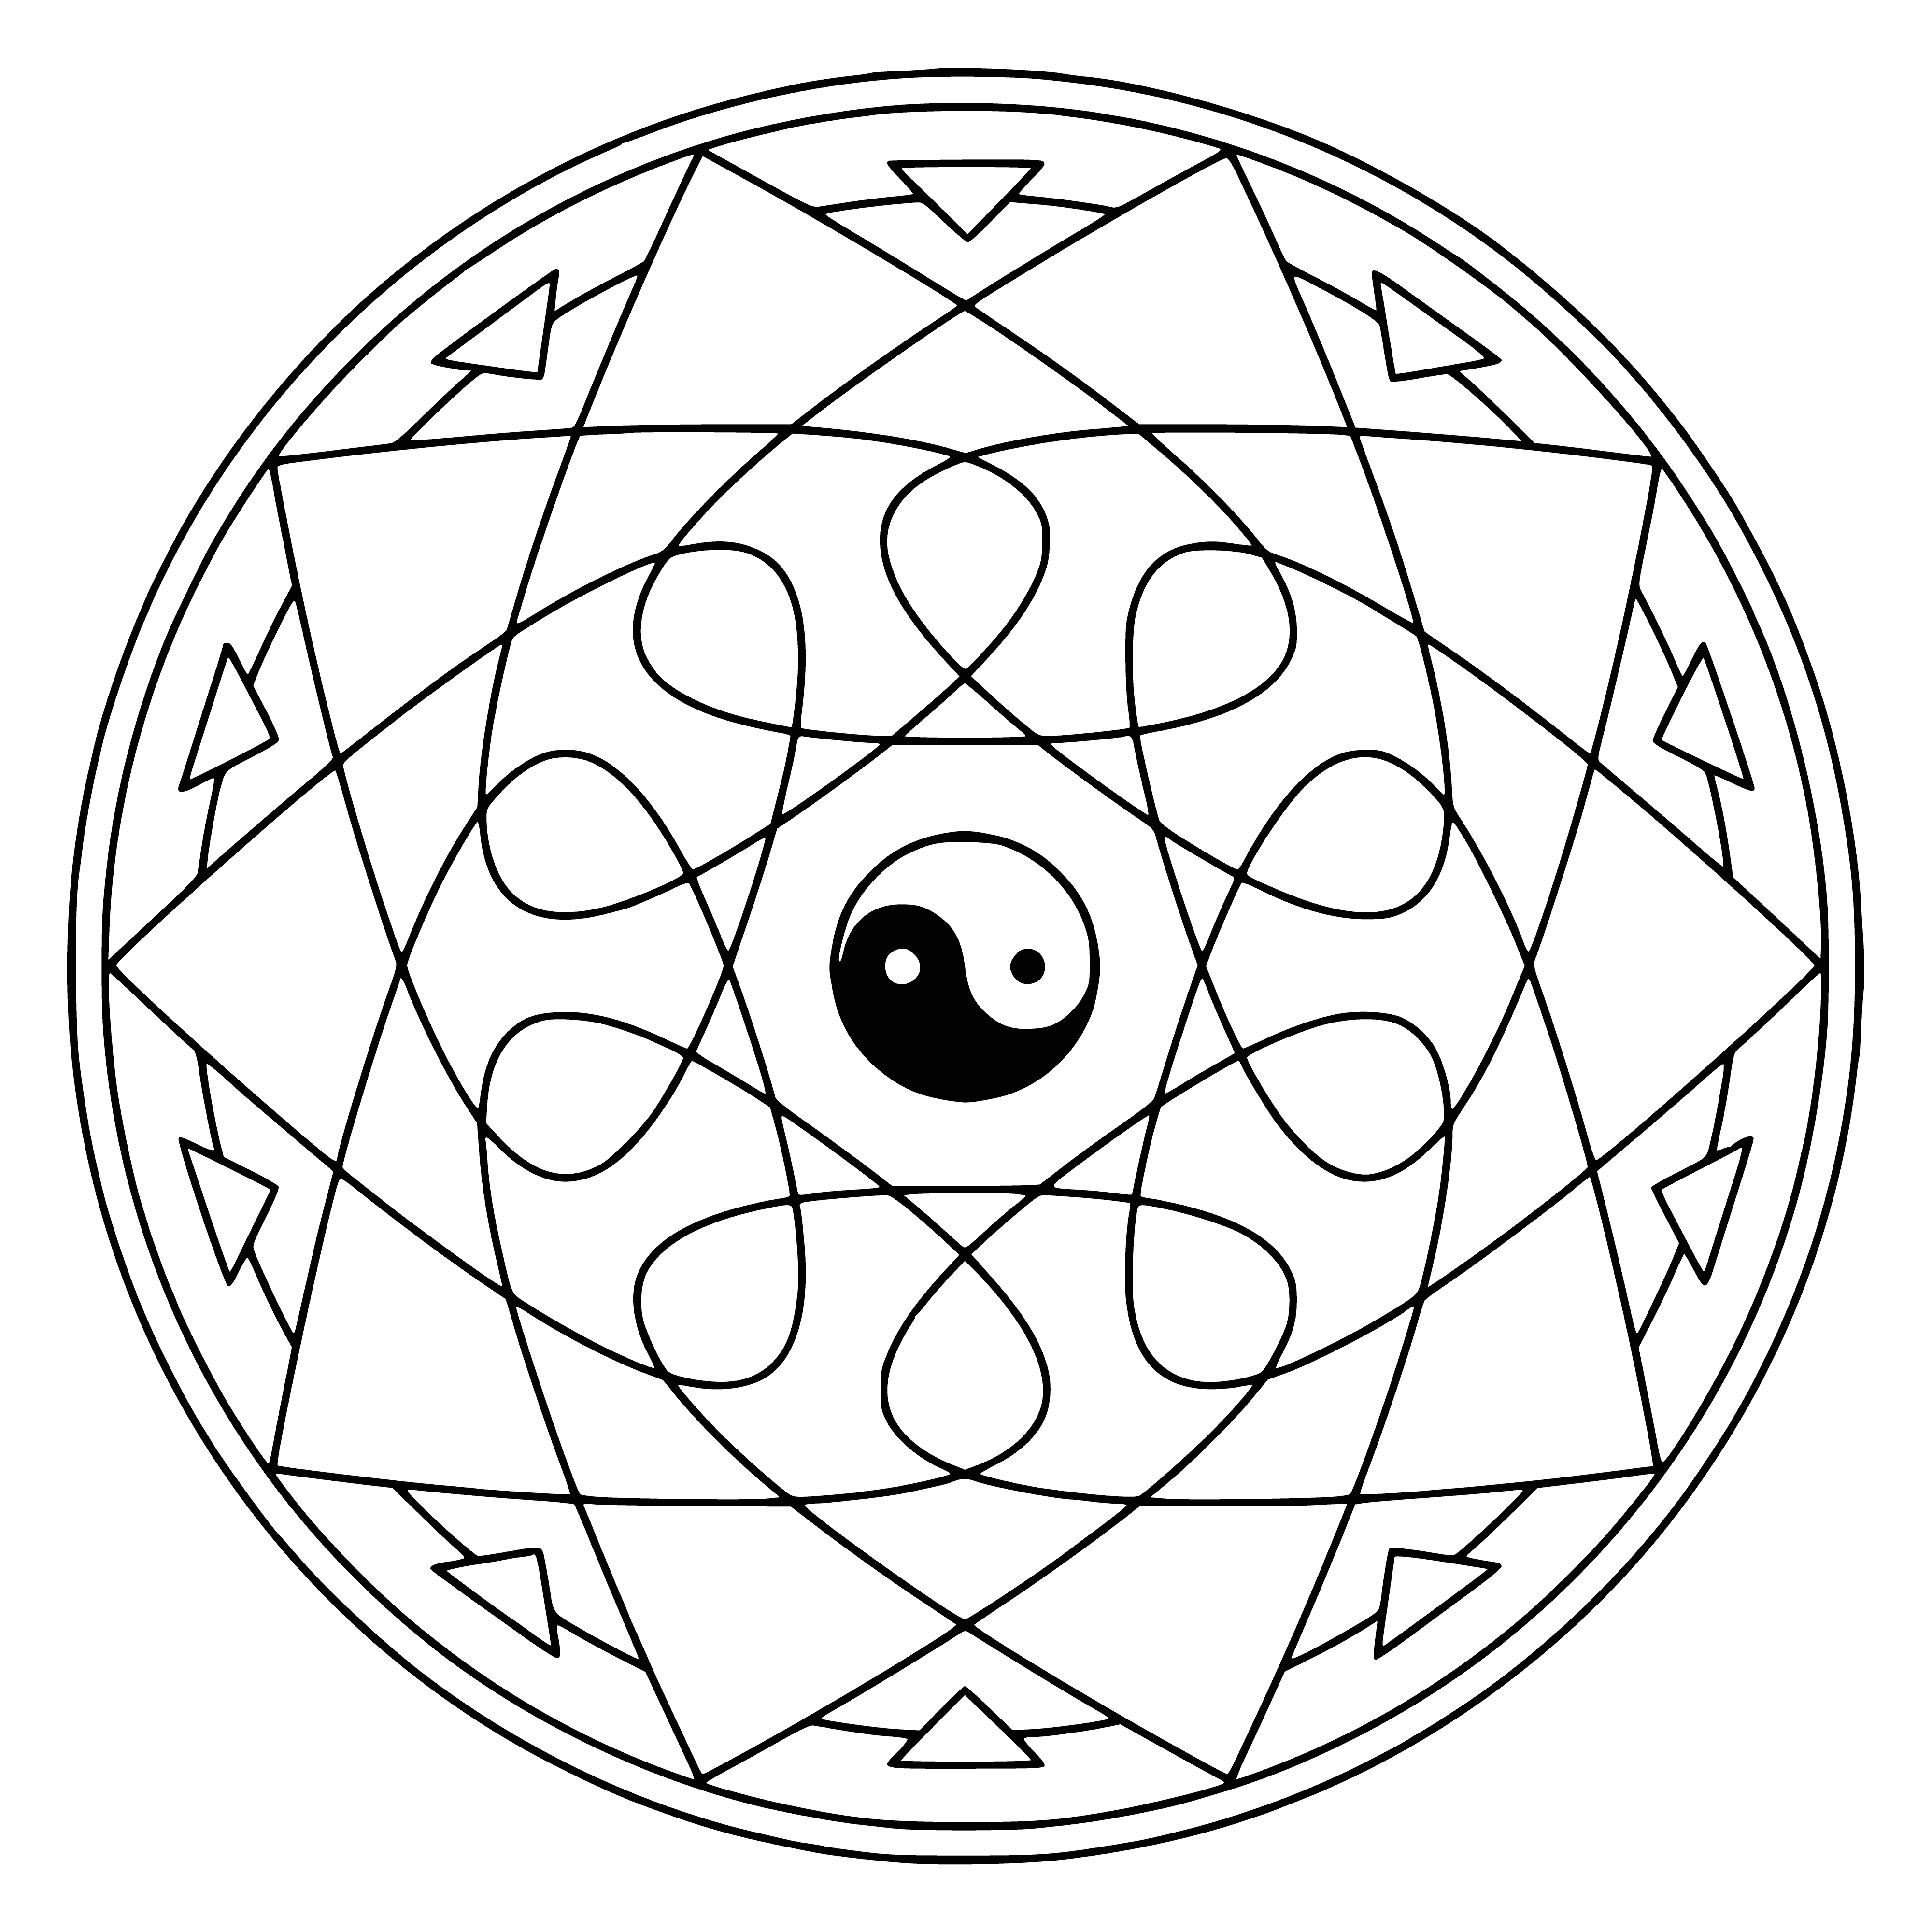 Mandala z symbolem Yin-Yang kolorowanka